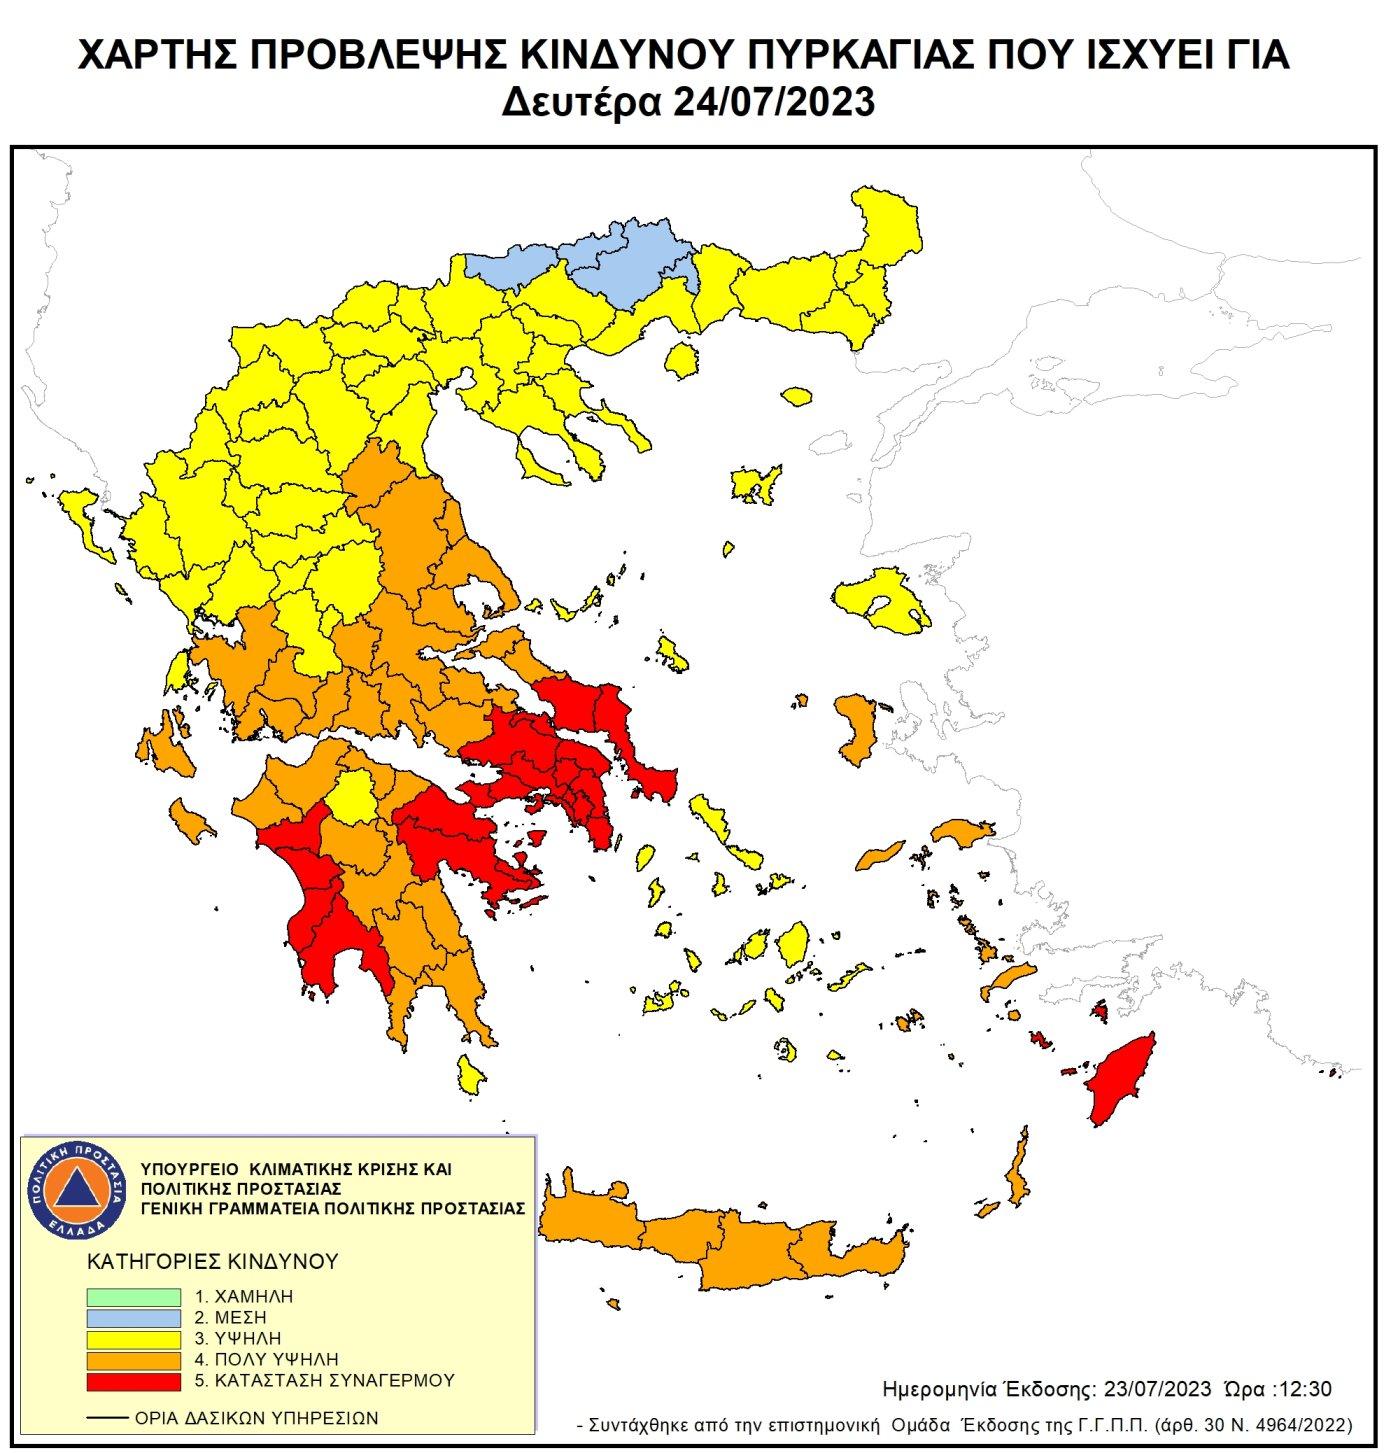 De grekiska myndigheterna varnar för hög brandrisk i stora delar av landet. 